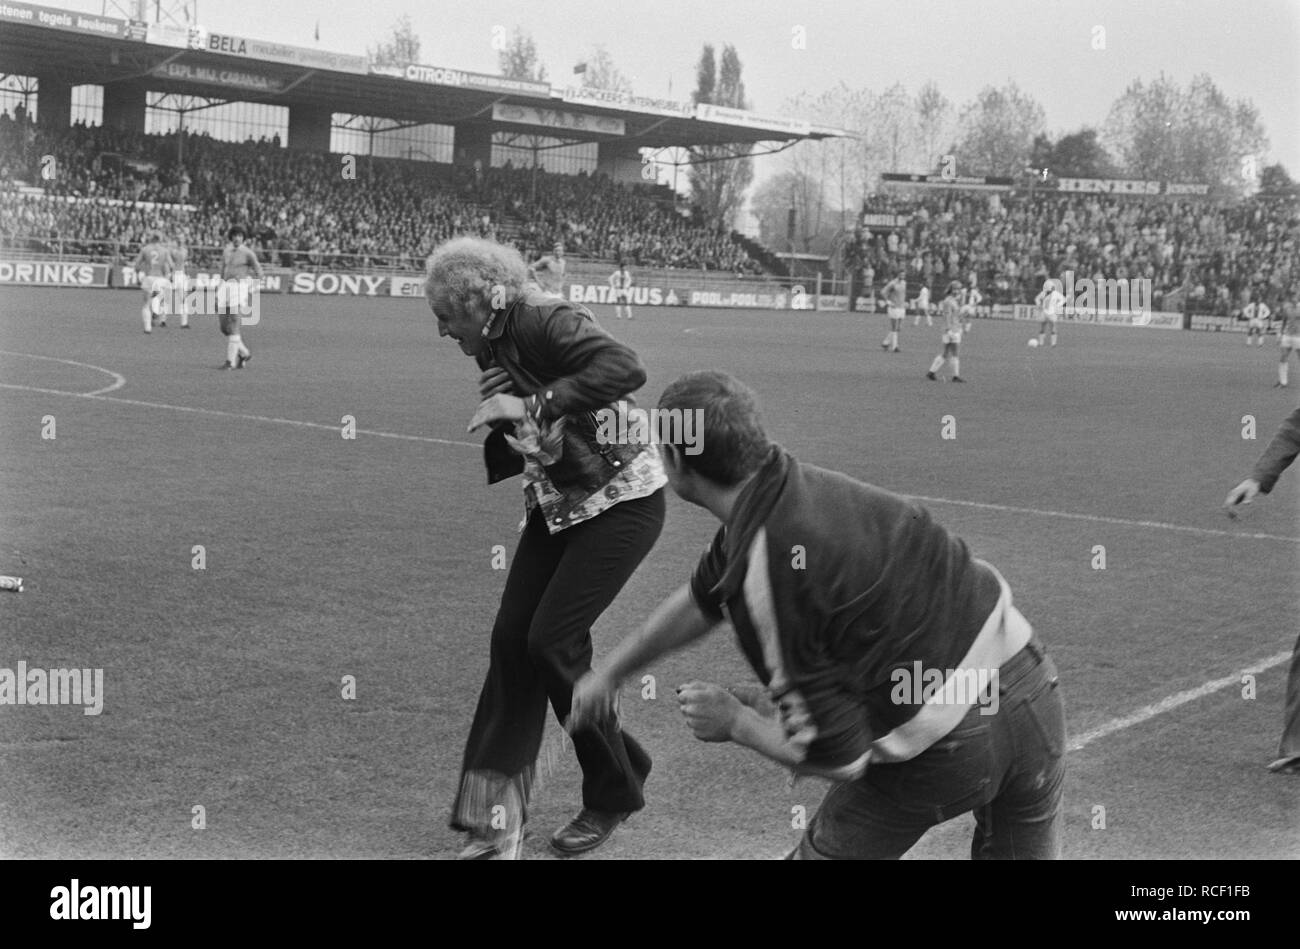 Ajax tegen FC Utrecht 7-0 supporters gaan elkaar met ketting te lijf,  Bestanddeelnr 928-8470 Stock Photo - Alamy